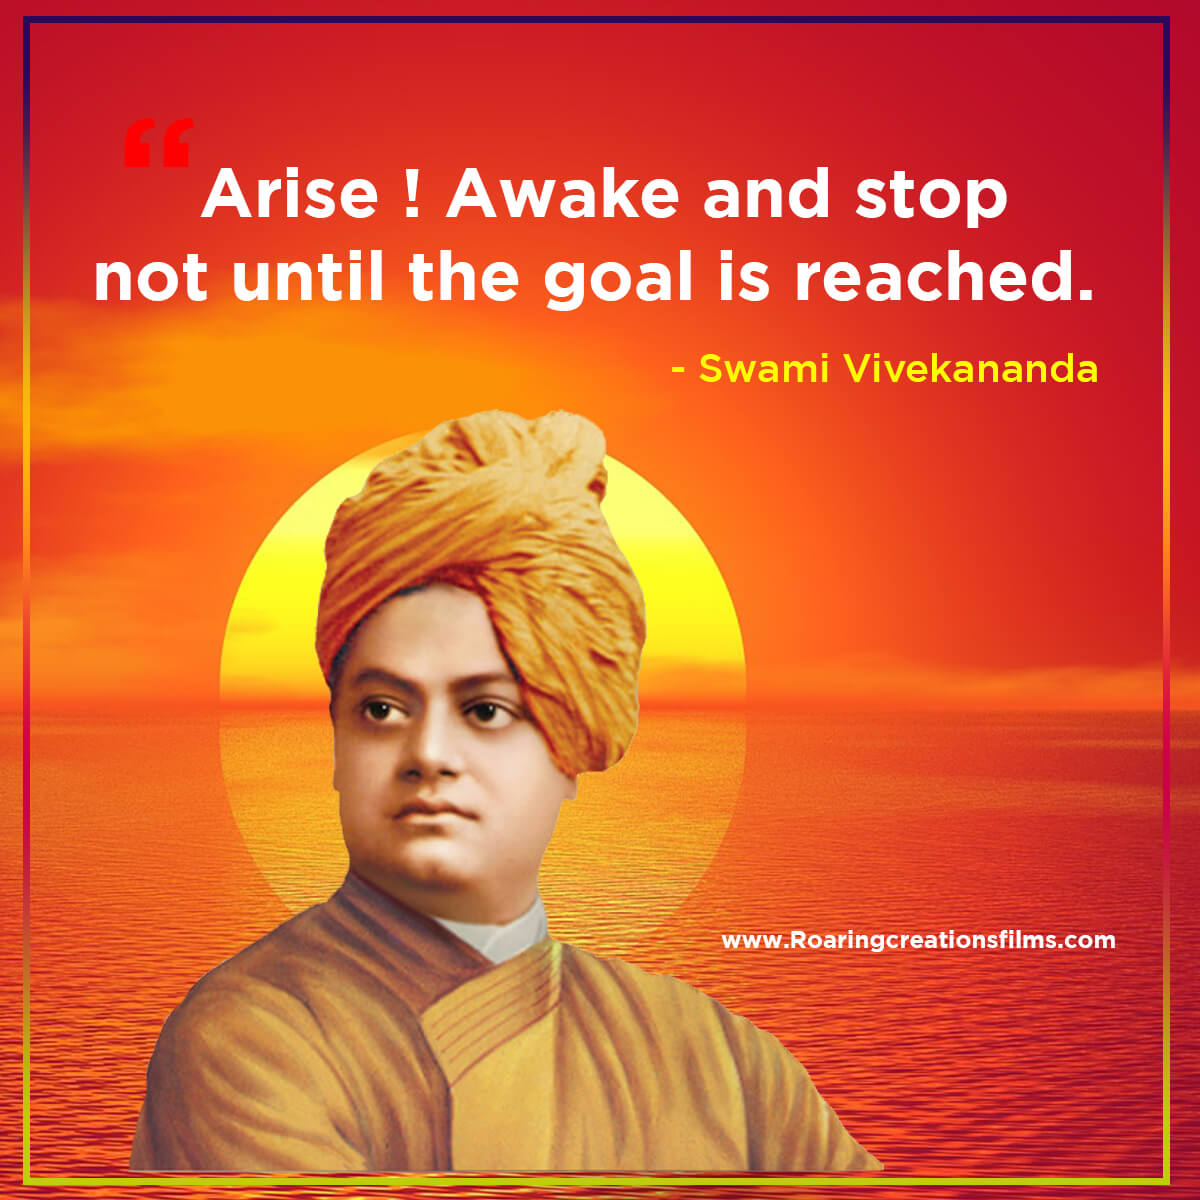 50+ Best Quotes of Swami Vivekananda - Swami Vivekananda Quotes in ...